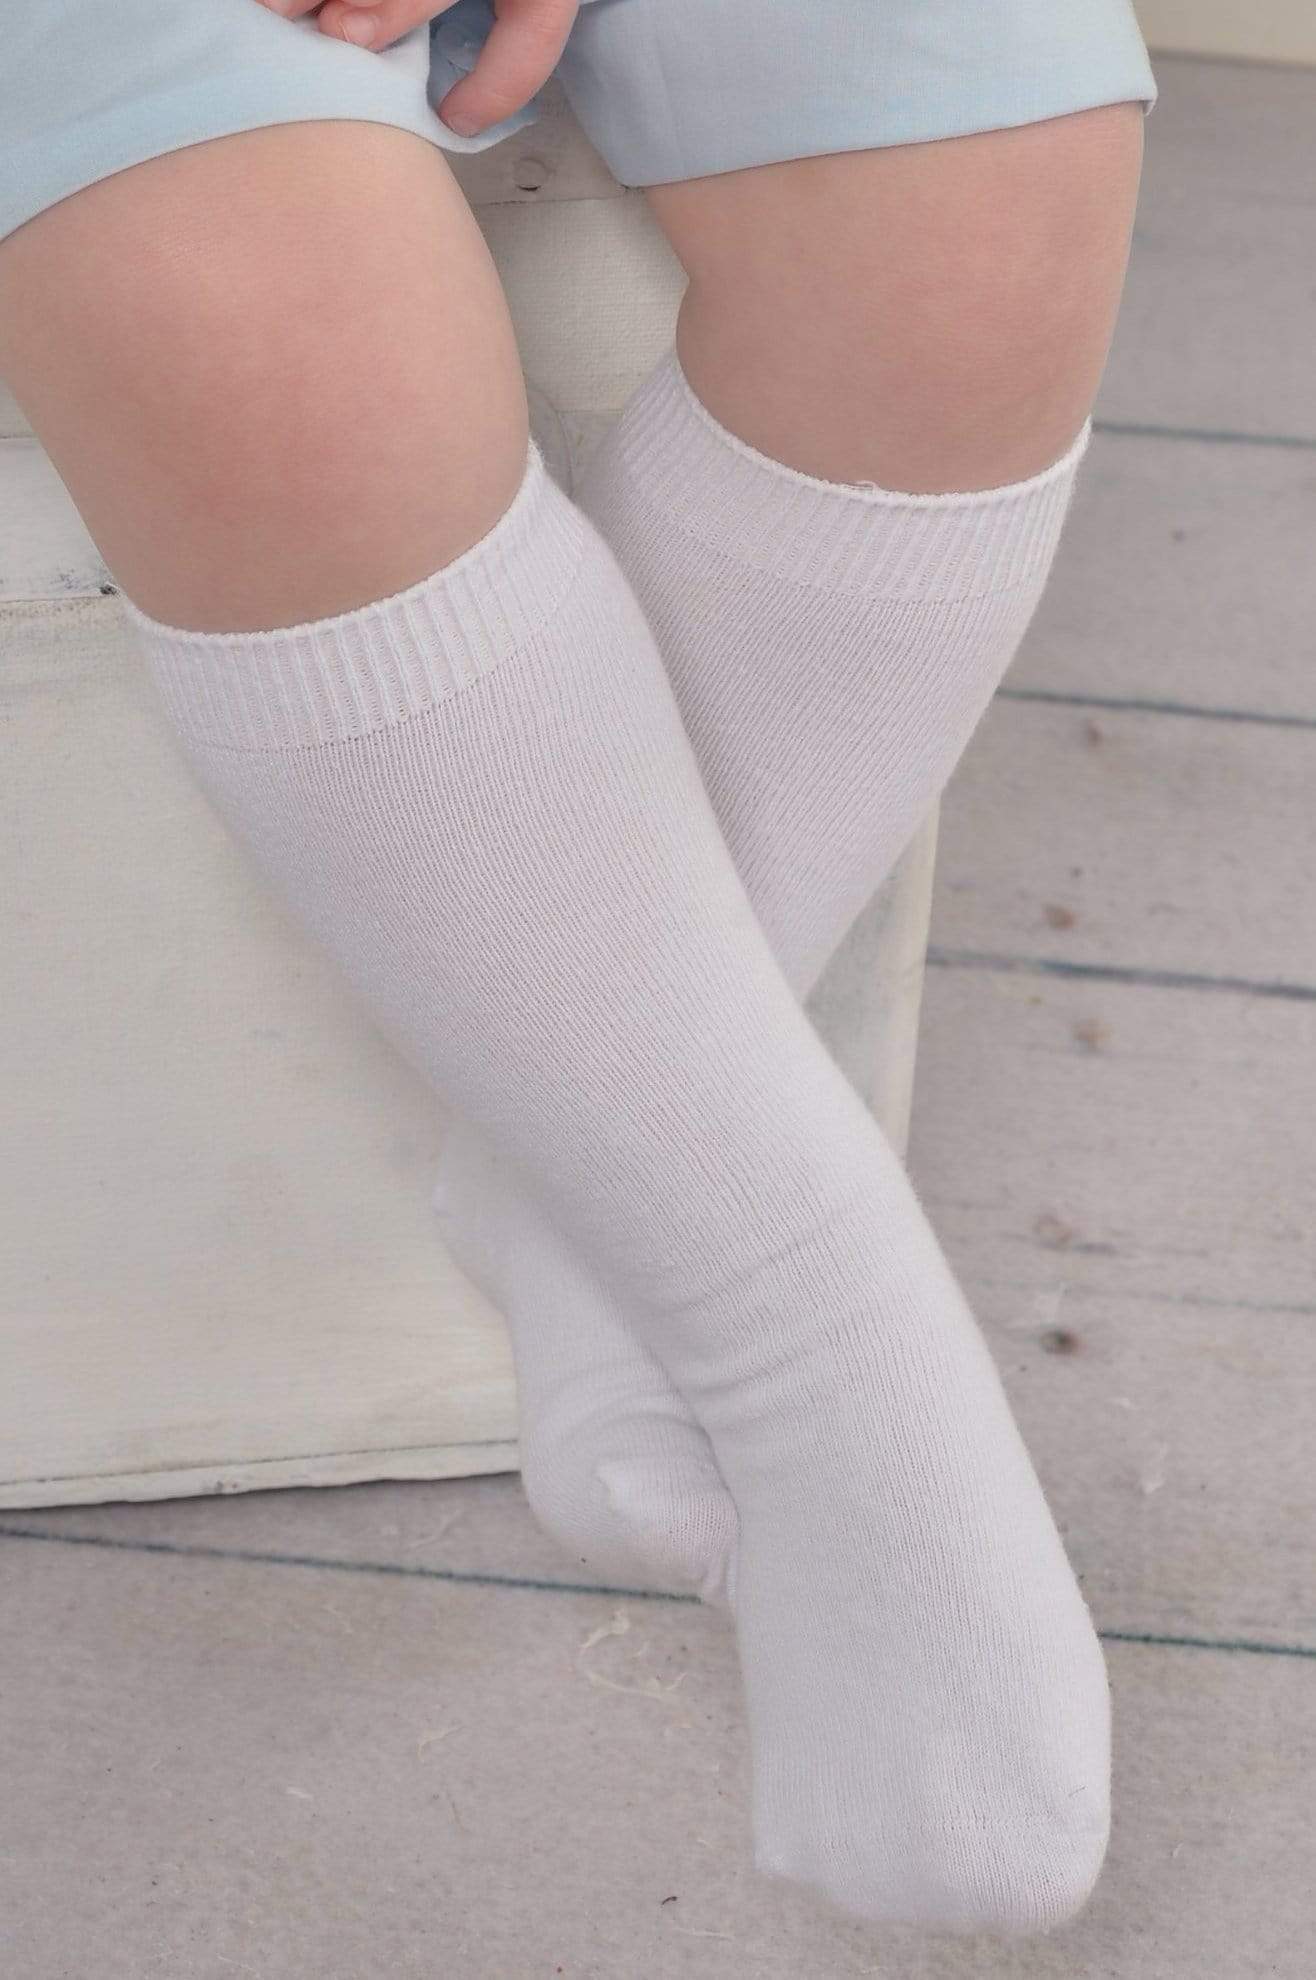 https://www.strasburgchildrens.com/cdn/shop/products/knee-high-socks-strasburg-children-knee-high-socks-cotton-boys-girls-seamless-toe-socks-28234630135890.jpg?v=1626931988